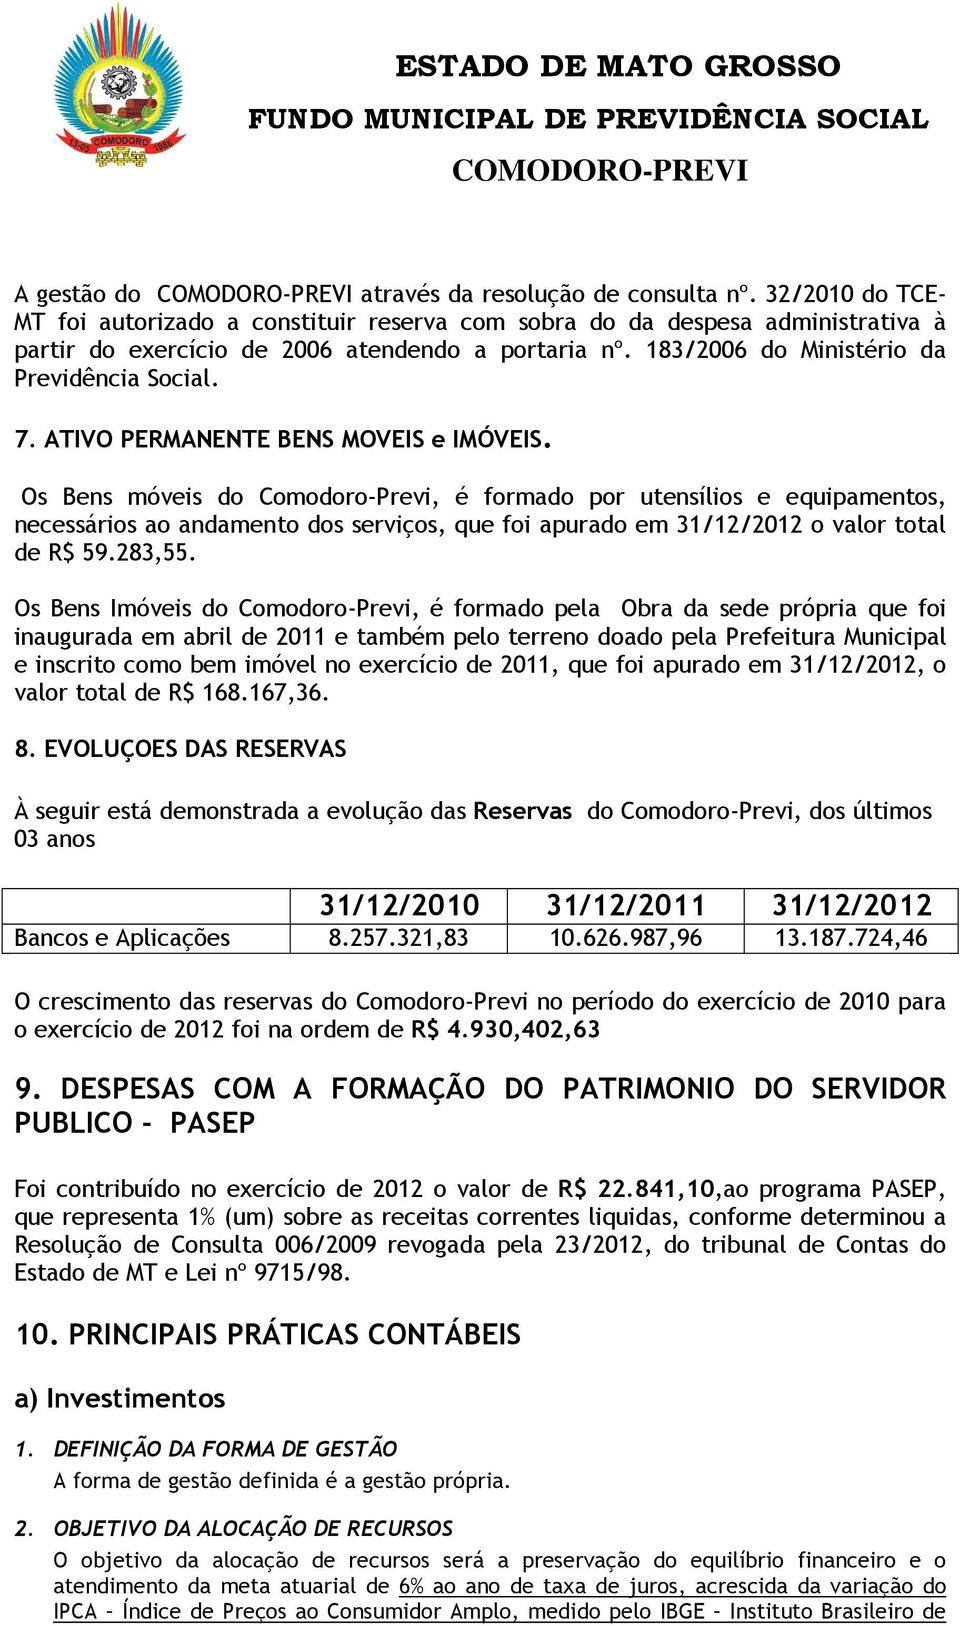 Os Bens móveis do Comodoro-Previ, é formado por utensílios e equipamentos, necessários ao andamento dos serviços, que foi apurado em 31/12/2012 o valor total de R$ 59.283,55.